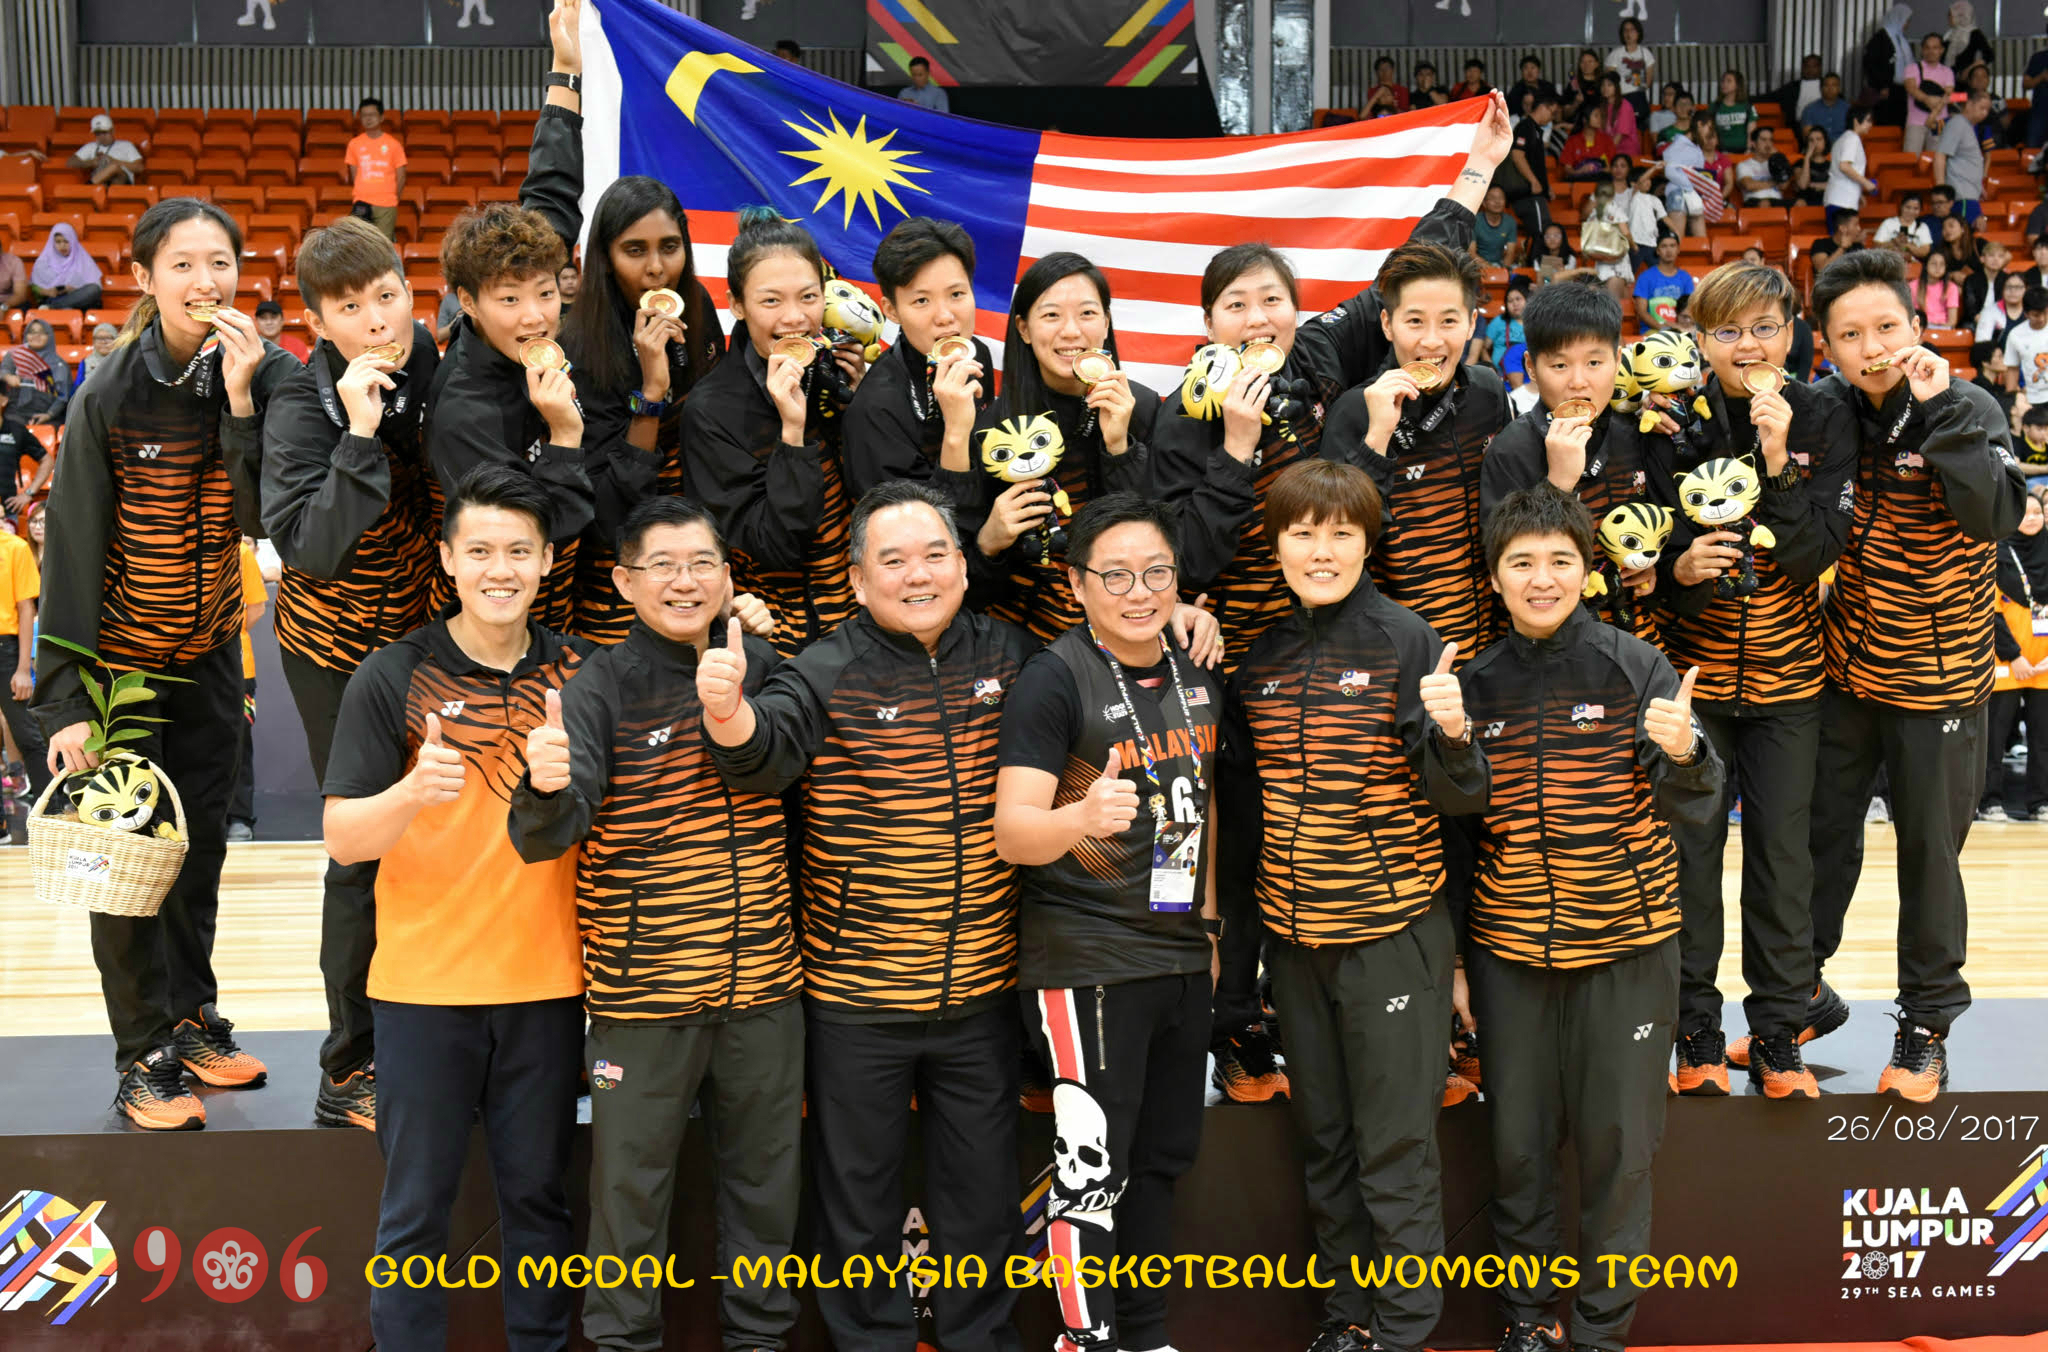 Congrats to Malaysia Women's Basketball Team!